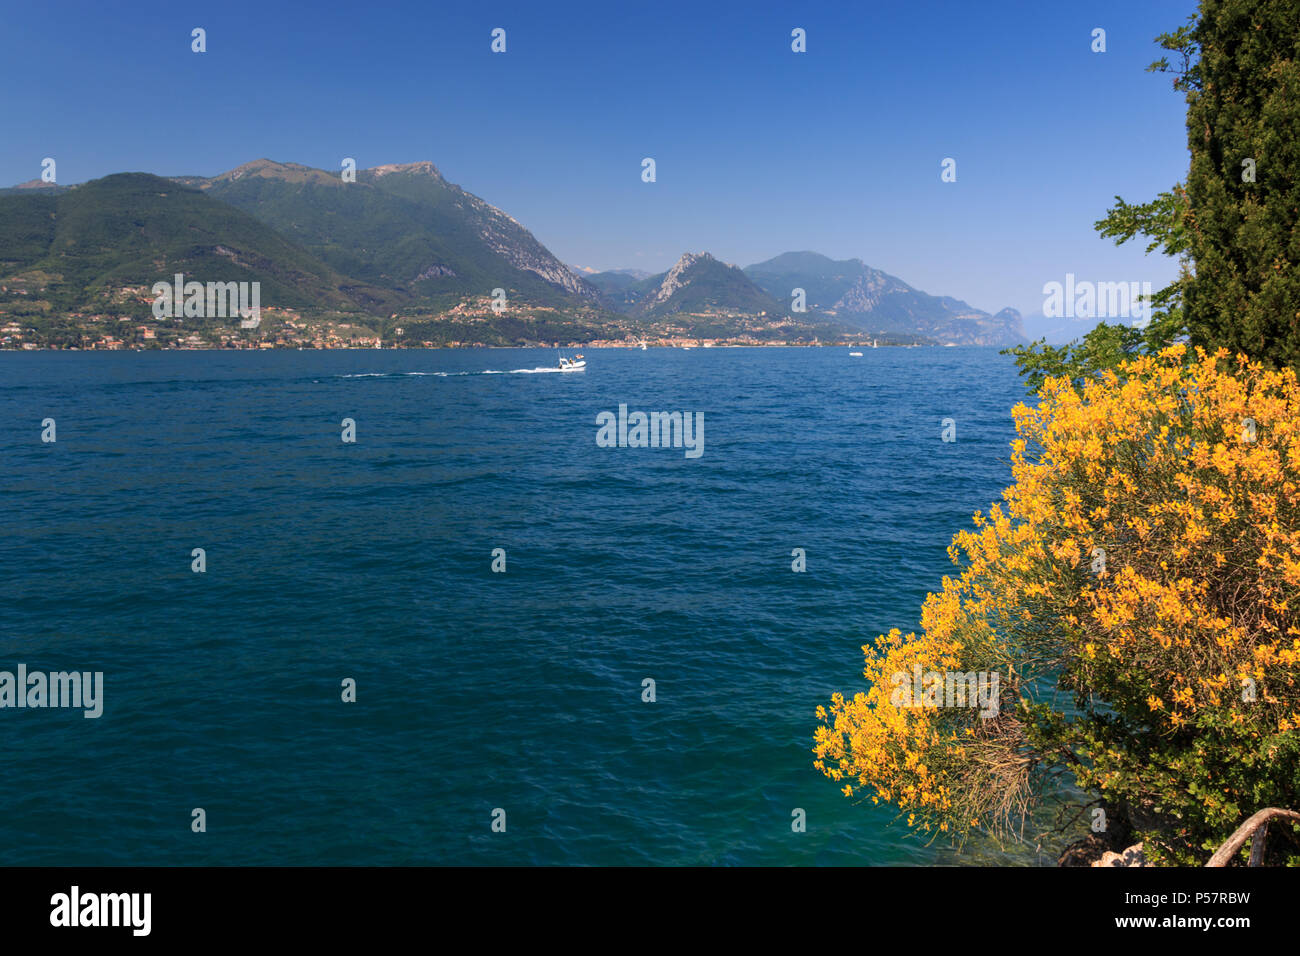 Beautiful landscape at Lake Garda looking towards Toscolano Maderno Stock Photo